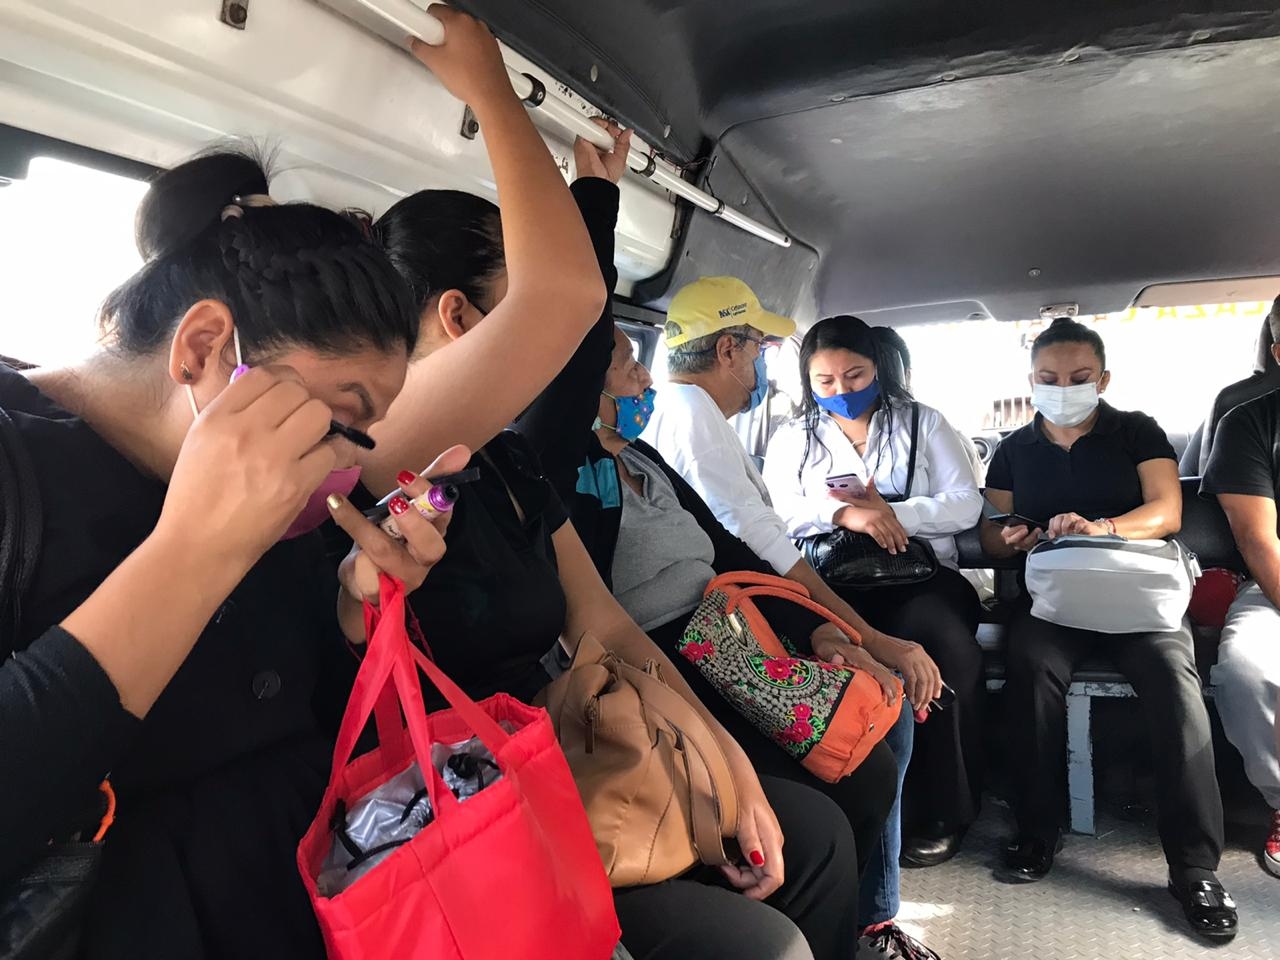 El transporte público es uno de los que más viola los protocolos sanitarios al permitir un número mayor de pasajeros e incluso sin cubrebocas